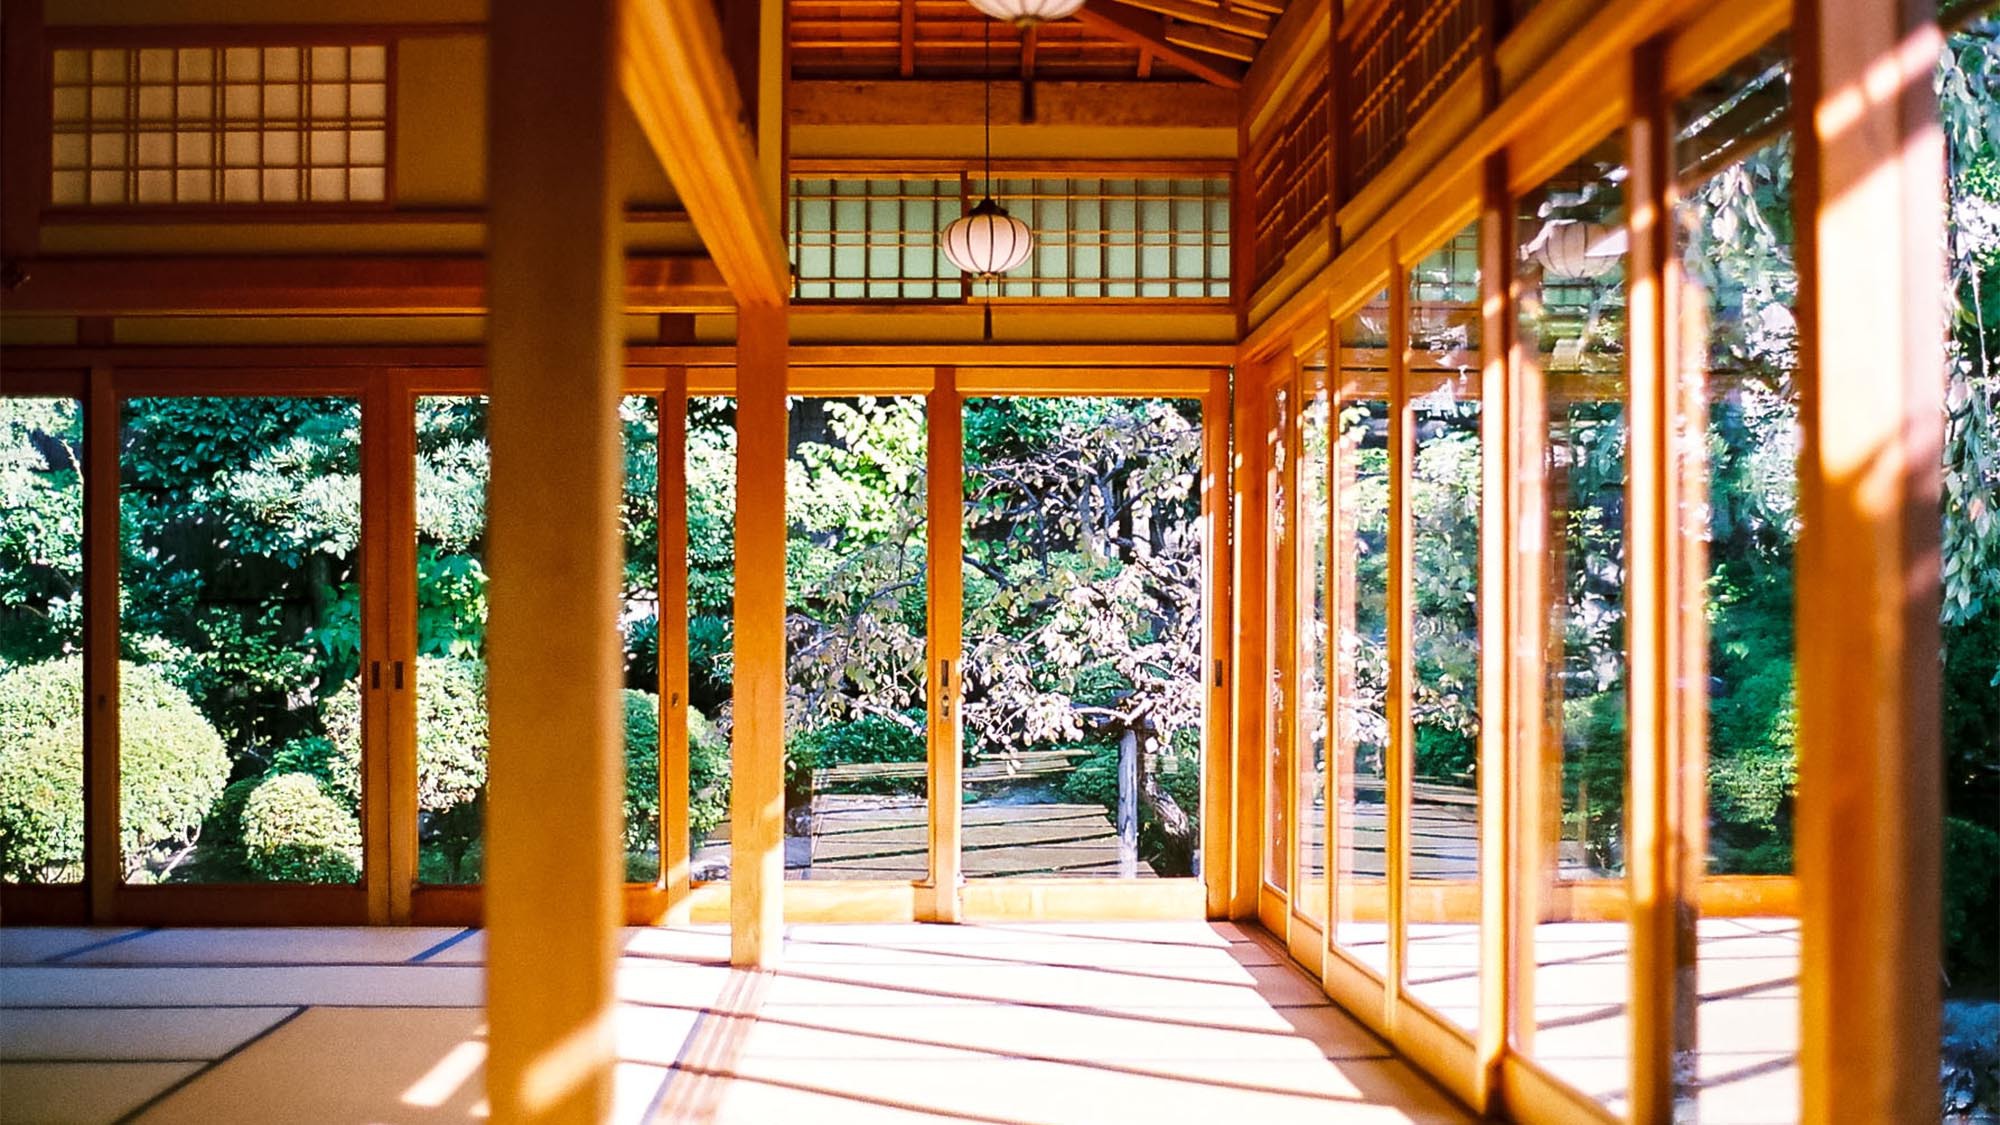 ・【景色】京の庭園をどこからでも眺められるような造りになっております